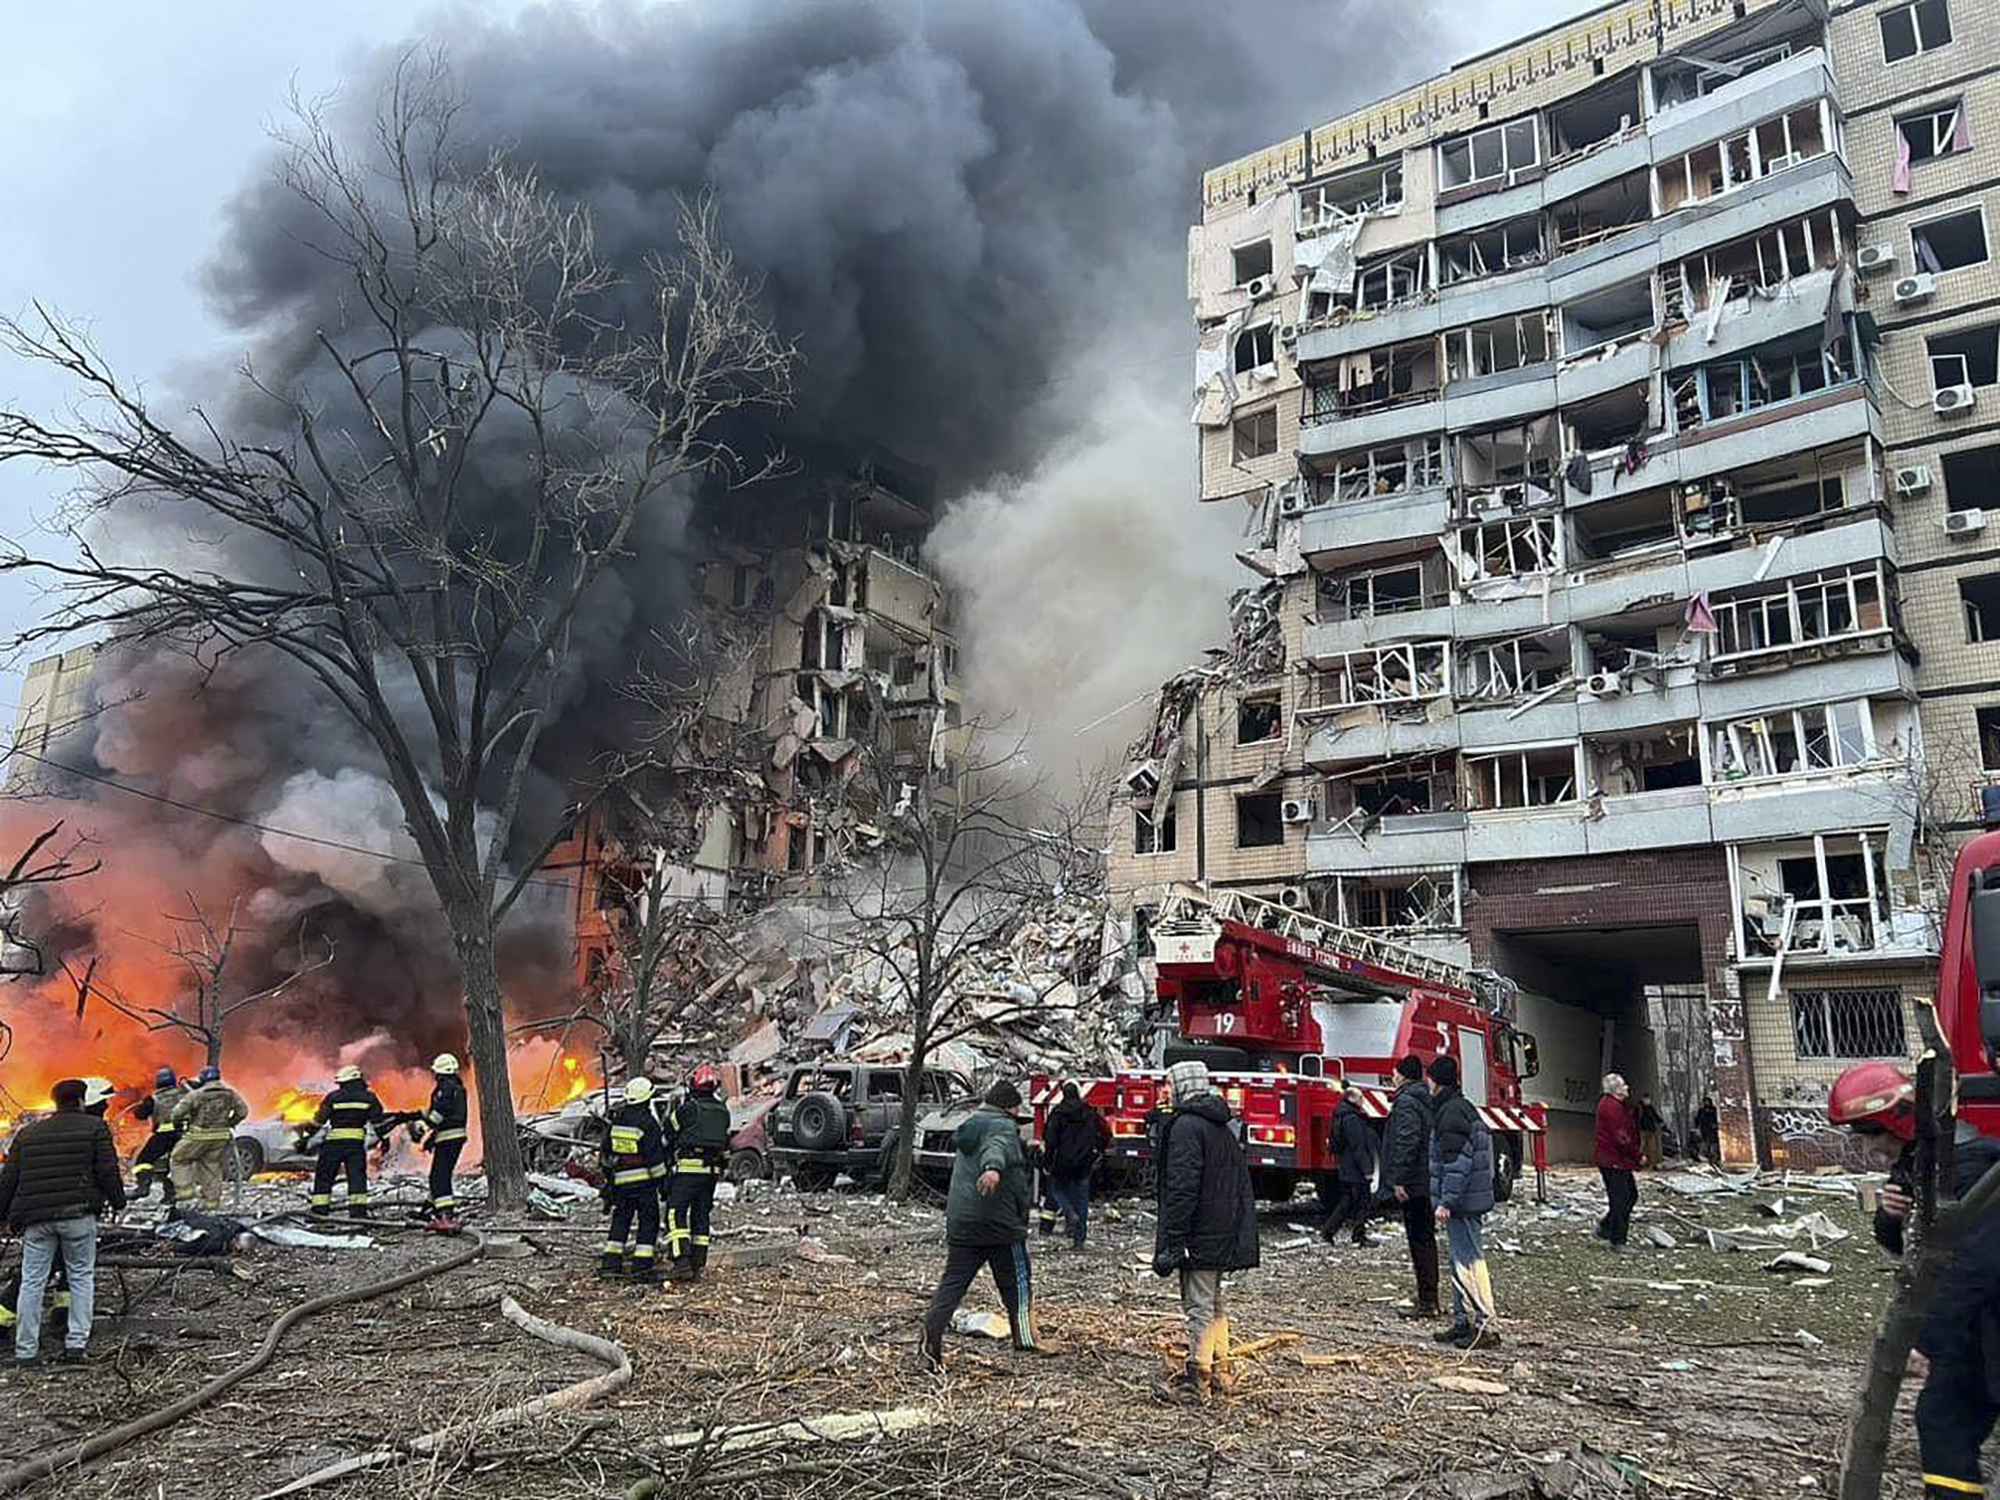 Foto difundida por la Oficina de Prensa de la Presidencia de Ucrania, en la que se observa un incendio y humo después de que un cohete ruso impactara en un edificio de varios pisos en Dnipro, Ucrania, dejando a muchas personas bajo los escombros el sábado 14 de enero de 2023. (AP)